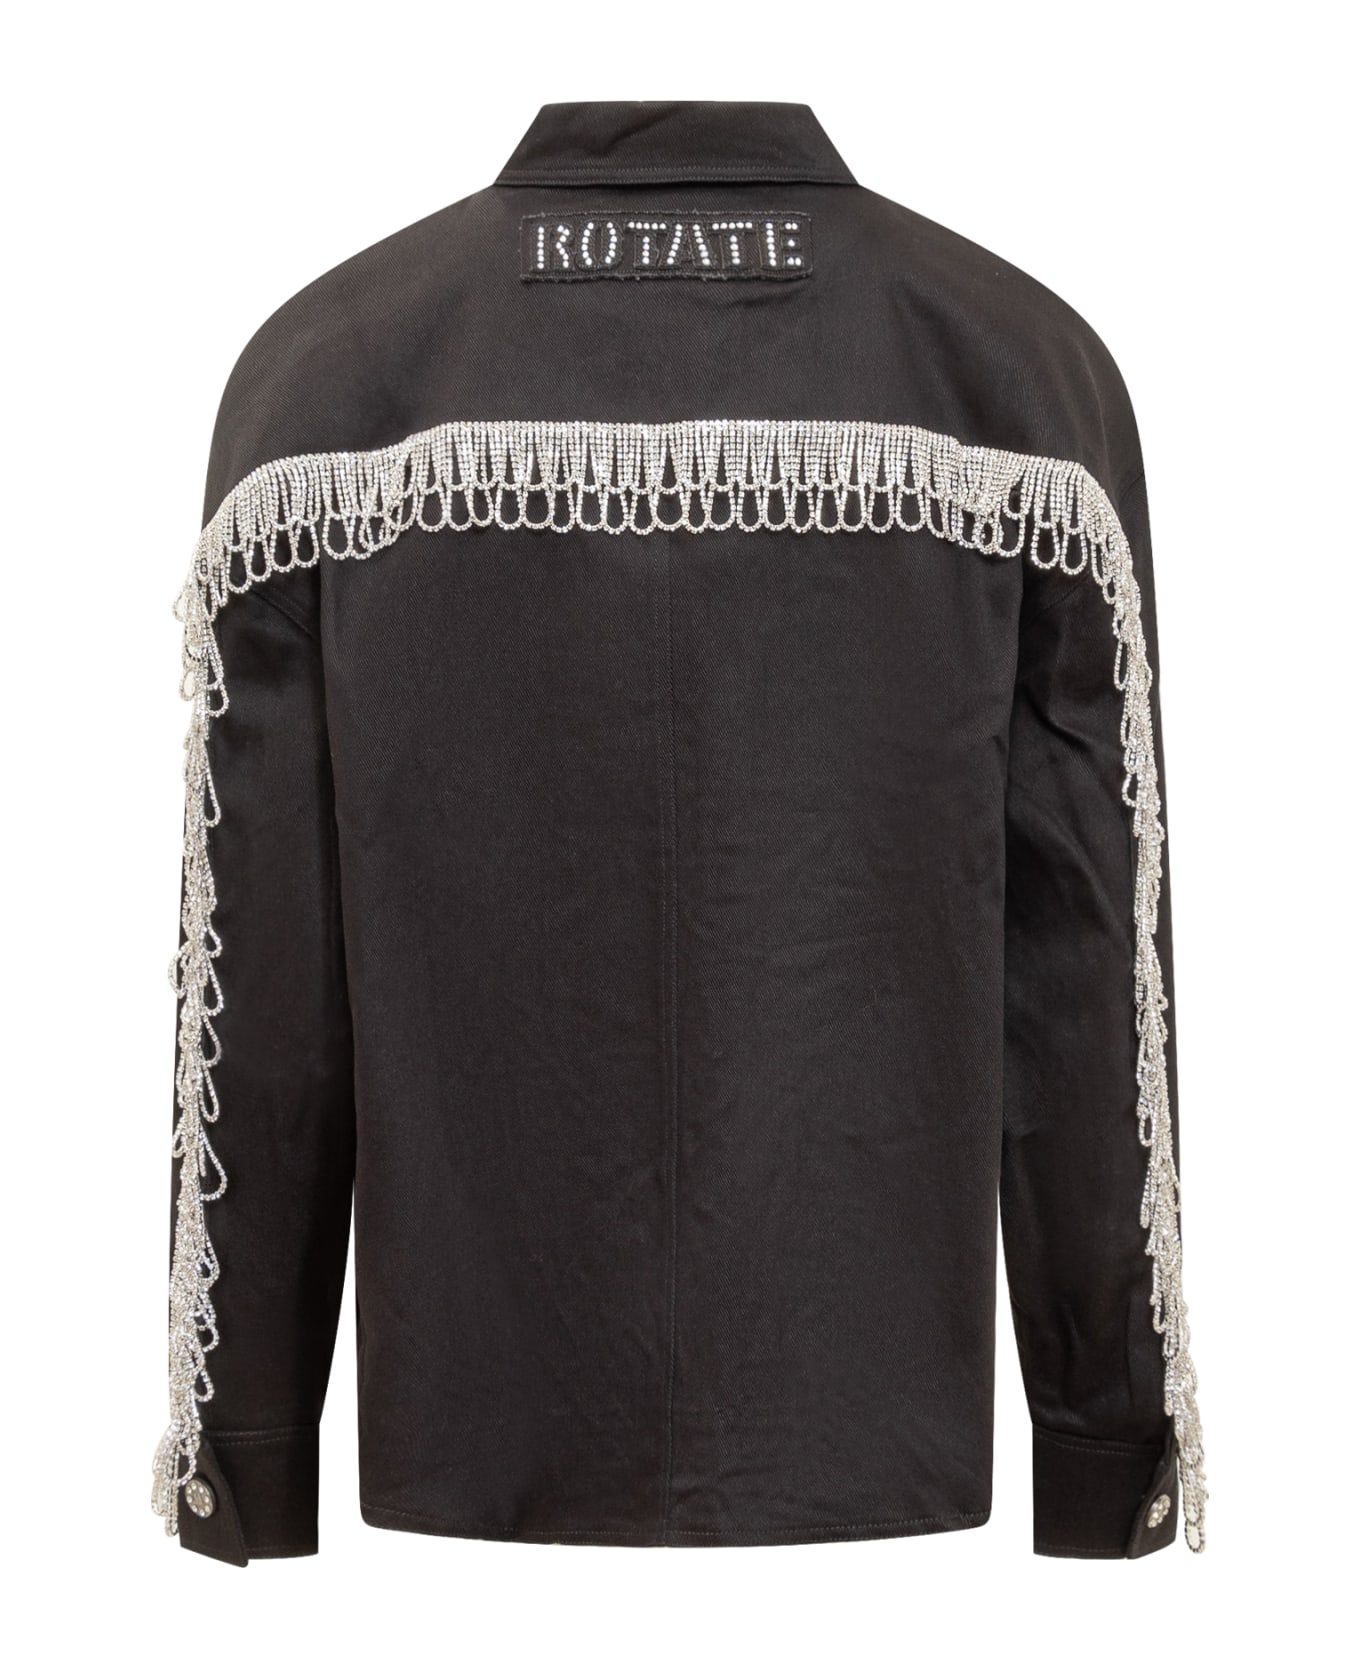 Rotate by Birger Christensen Denim Jacket With Rhinestones - BLACK